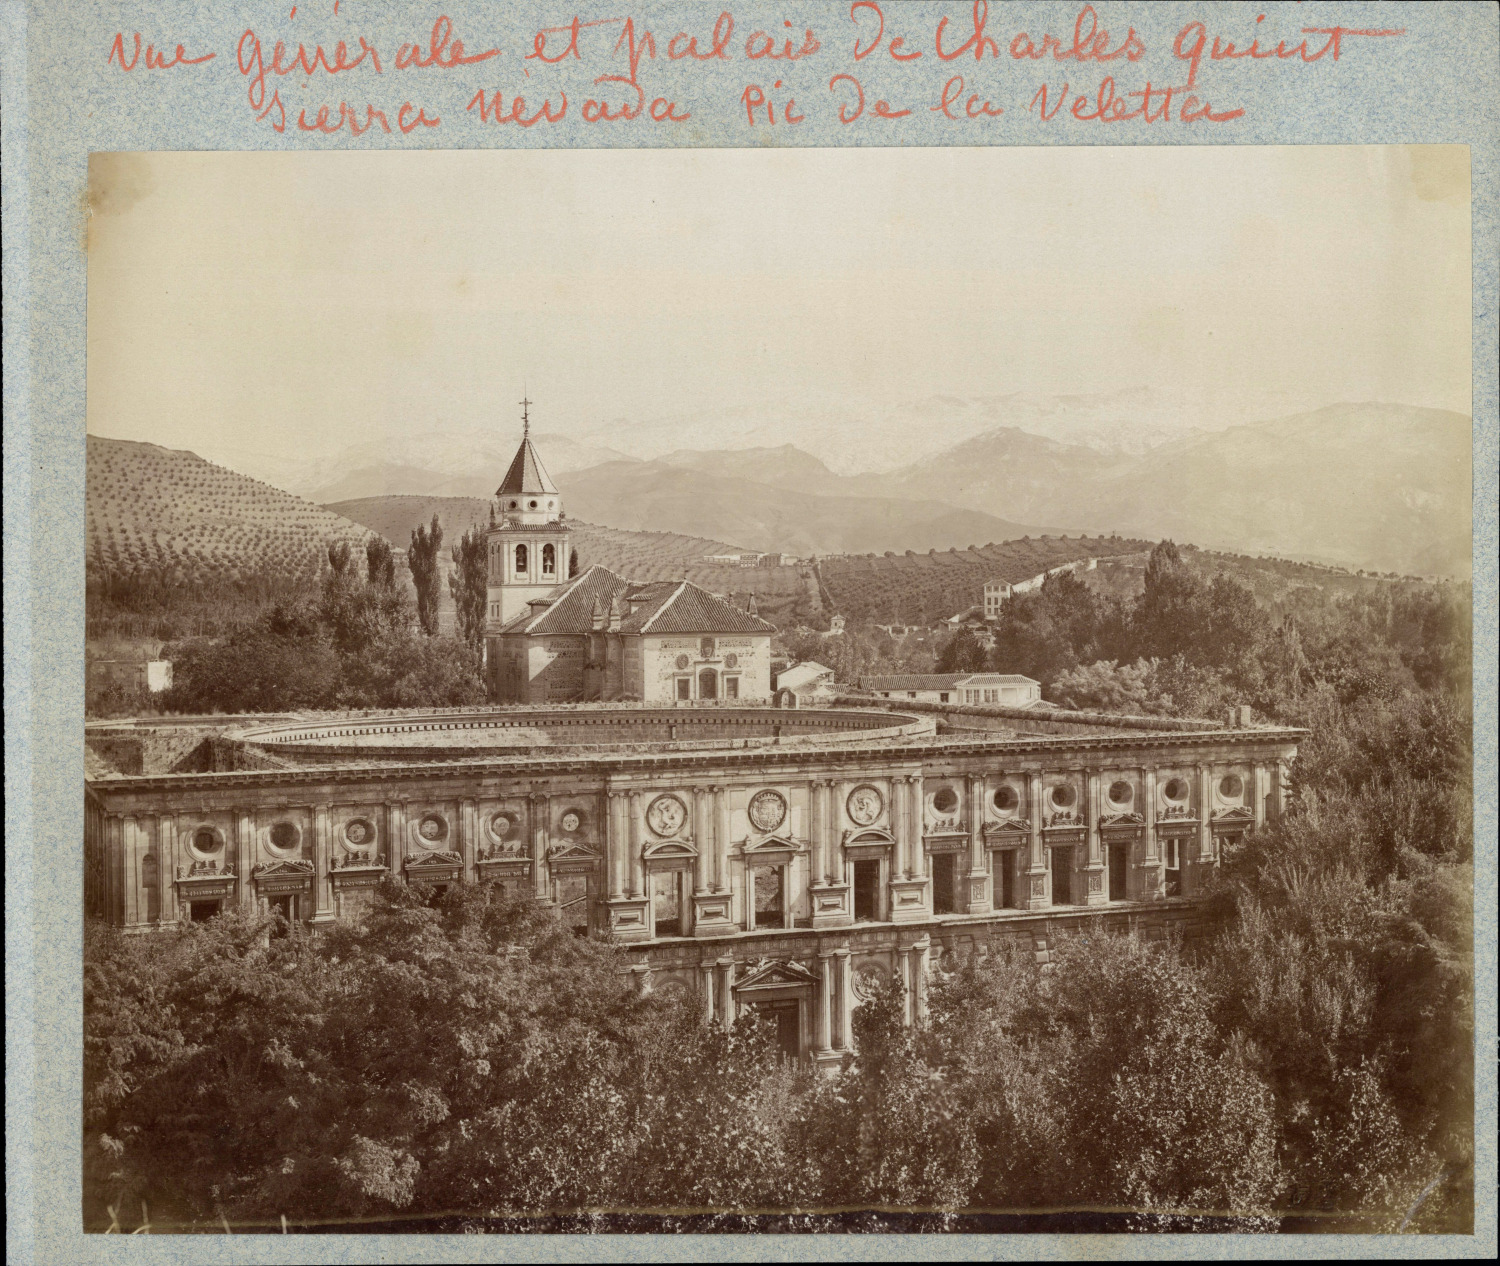 Spain, Granada, Palacio de Carlos V Vintage Albumen Print Albumin Print  